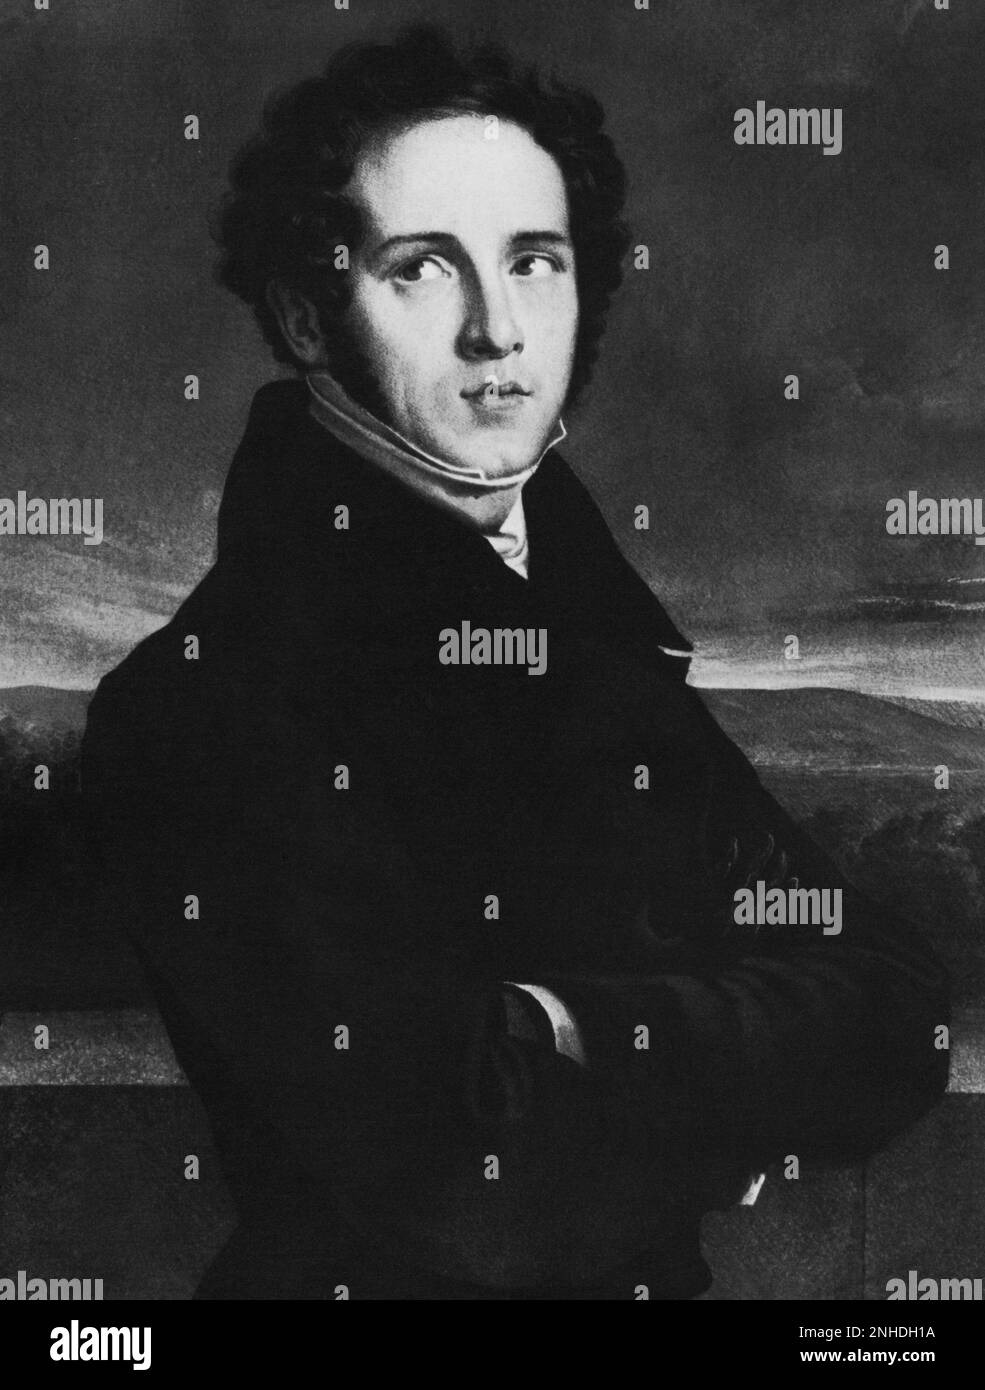 El célebre compositor italiano VINCENZO BELLINI ( Catania 1801 - Puteaux , París 1835 ) , autor de IL PIRATA ( 1827 ), LA SONNAMBULA ( 1831 ), NORMA ( 1831 ) e I PURITANI ( 1835 ) - COMPOSITORE LIRICO - LIRICA - MÚSICA Clásica - clásica - musicista - músico - retrato - ritratto - colletto --- Archivio GBB Foto de stock